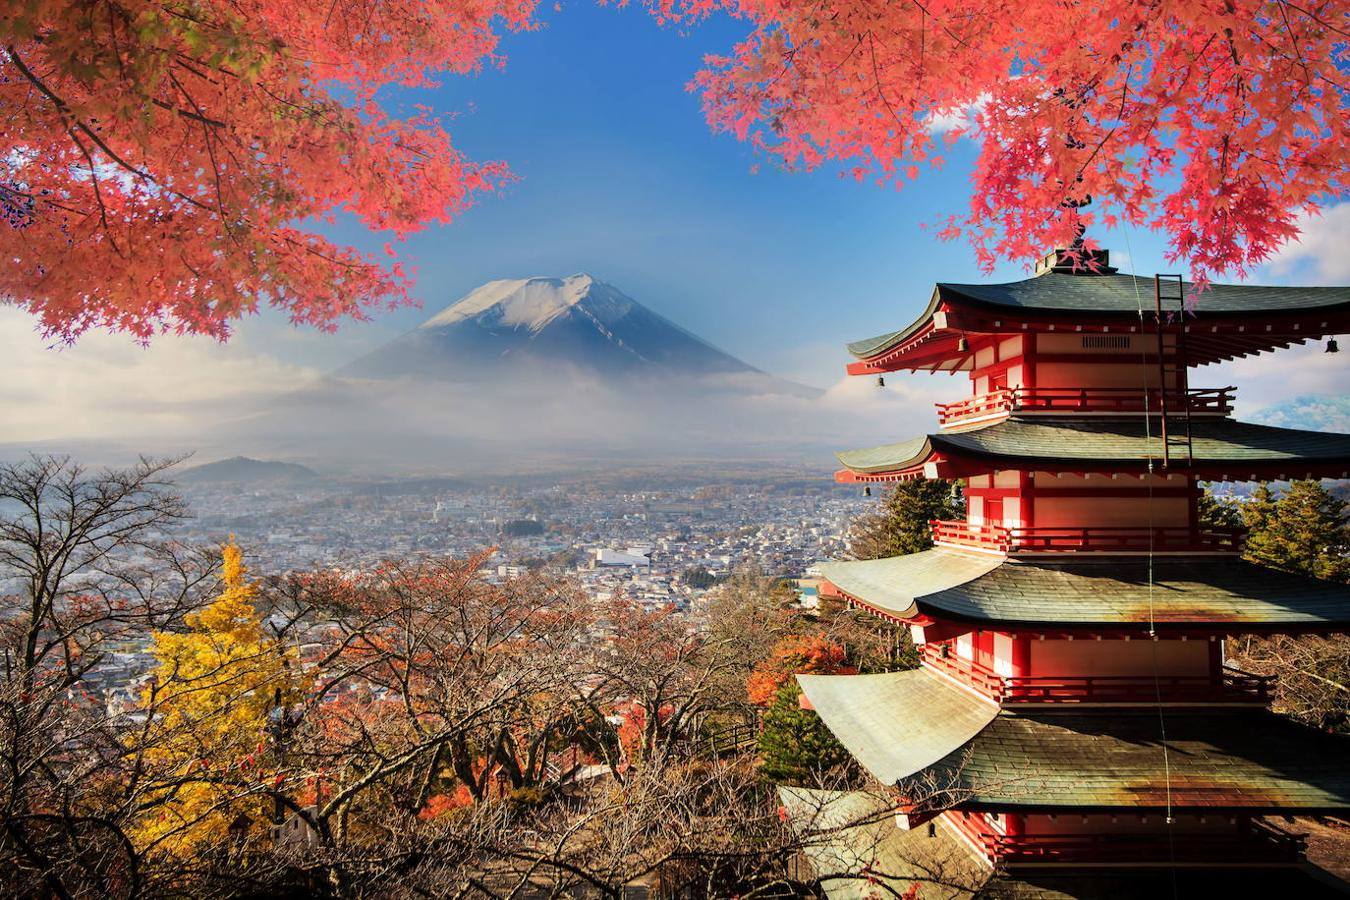 Monte Fuji: Además de uno de los principales símbolos de Japón, el monte Fuji es el volcán más famoso del país y uno de los paisajes más venerados. Al tratarse de una de las tres montañas sagradas de Japón, encontrar su ladera completamente llena de santuarios budistas, arcos torii y otros elementos de la cultura nipona, es algo habitual. Está catalogado como un 'volcán joven', a pesar de haberse formado hace 100.000 años y entró en actividad hace 10.000 años. 